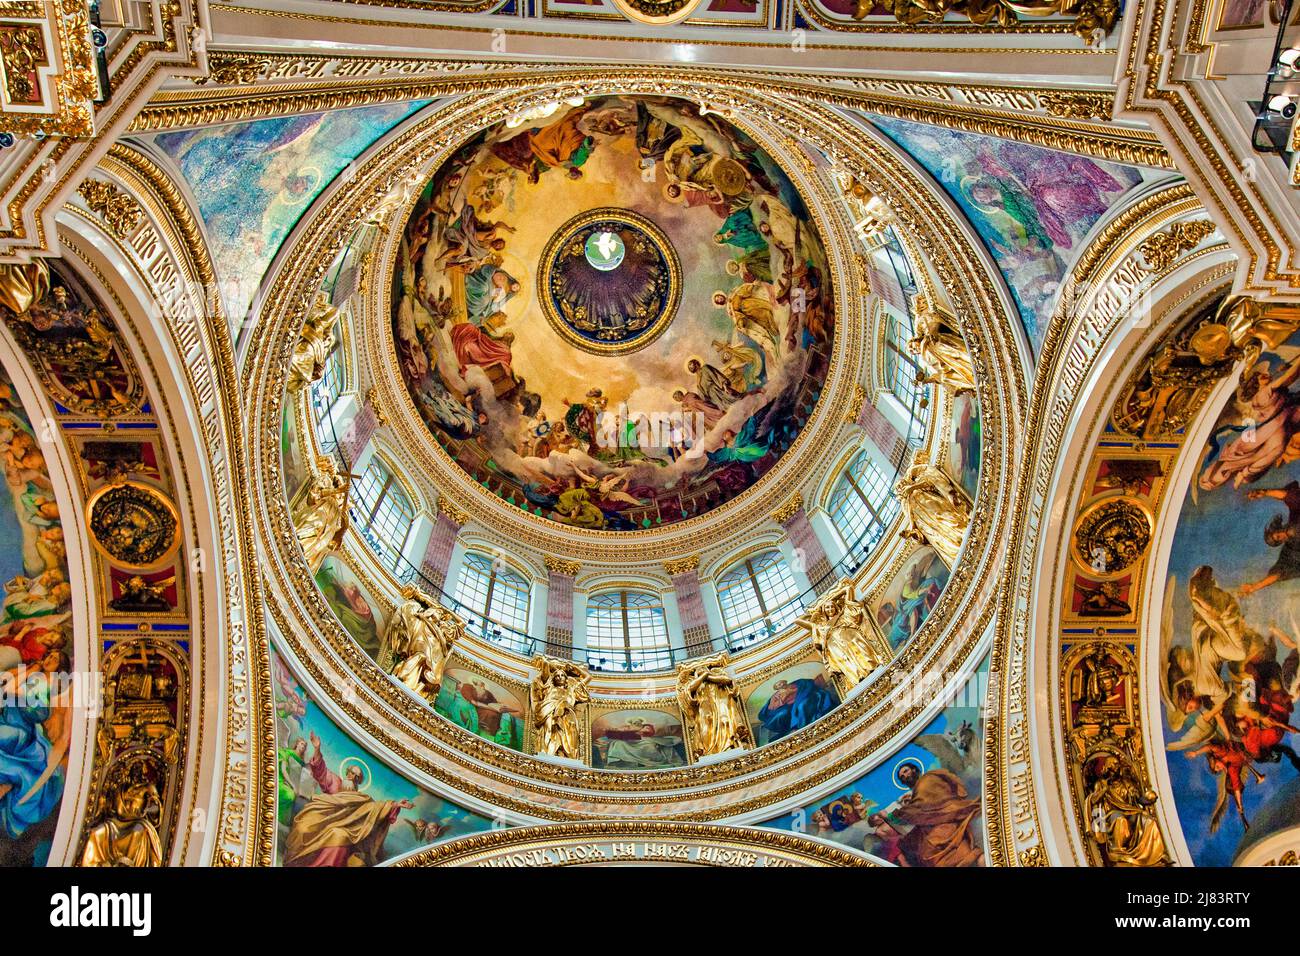 Interior de la Catedral de San Isaac, San Petersburgo, Rusia Foto de stock